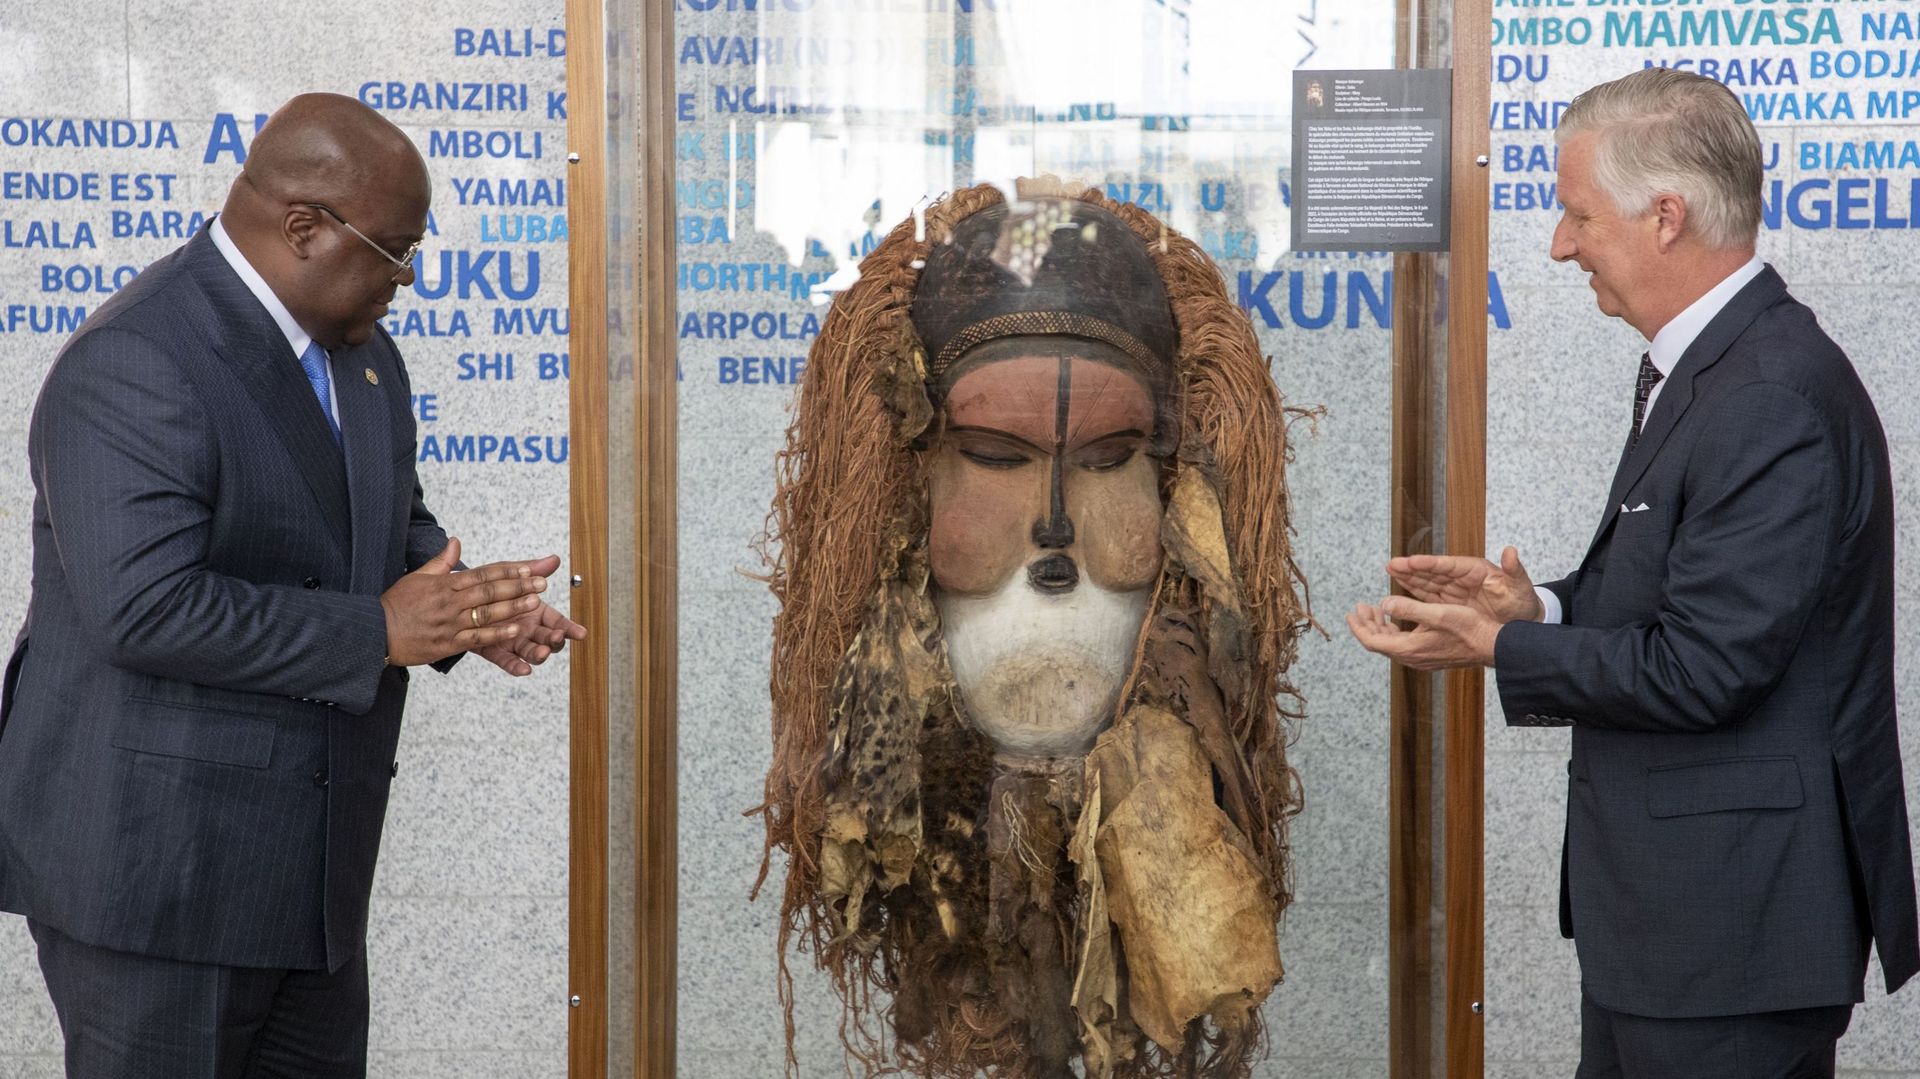 Le président de la République démocratique du Congo, Felix Tshisekedi, et le roi Philippe – Philippe de Belgique dévoilent un masque Kakuungu, rendu par la Belgique au Congo, lors d’une visite au Musée national, MNRDC, Musee national de la République démo